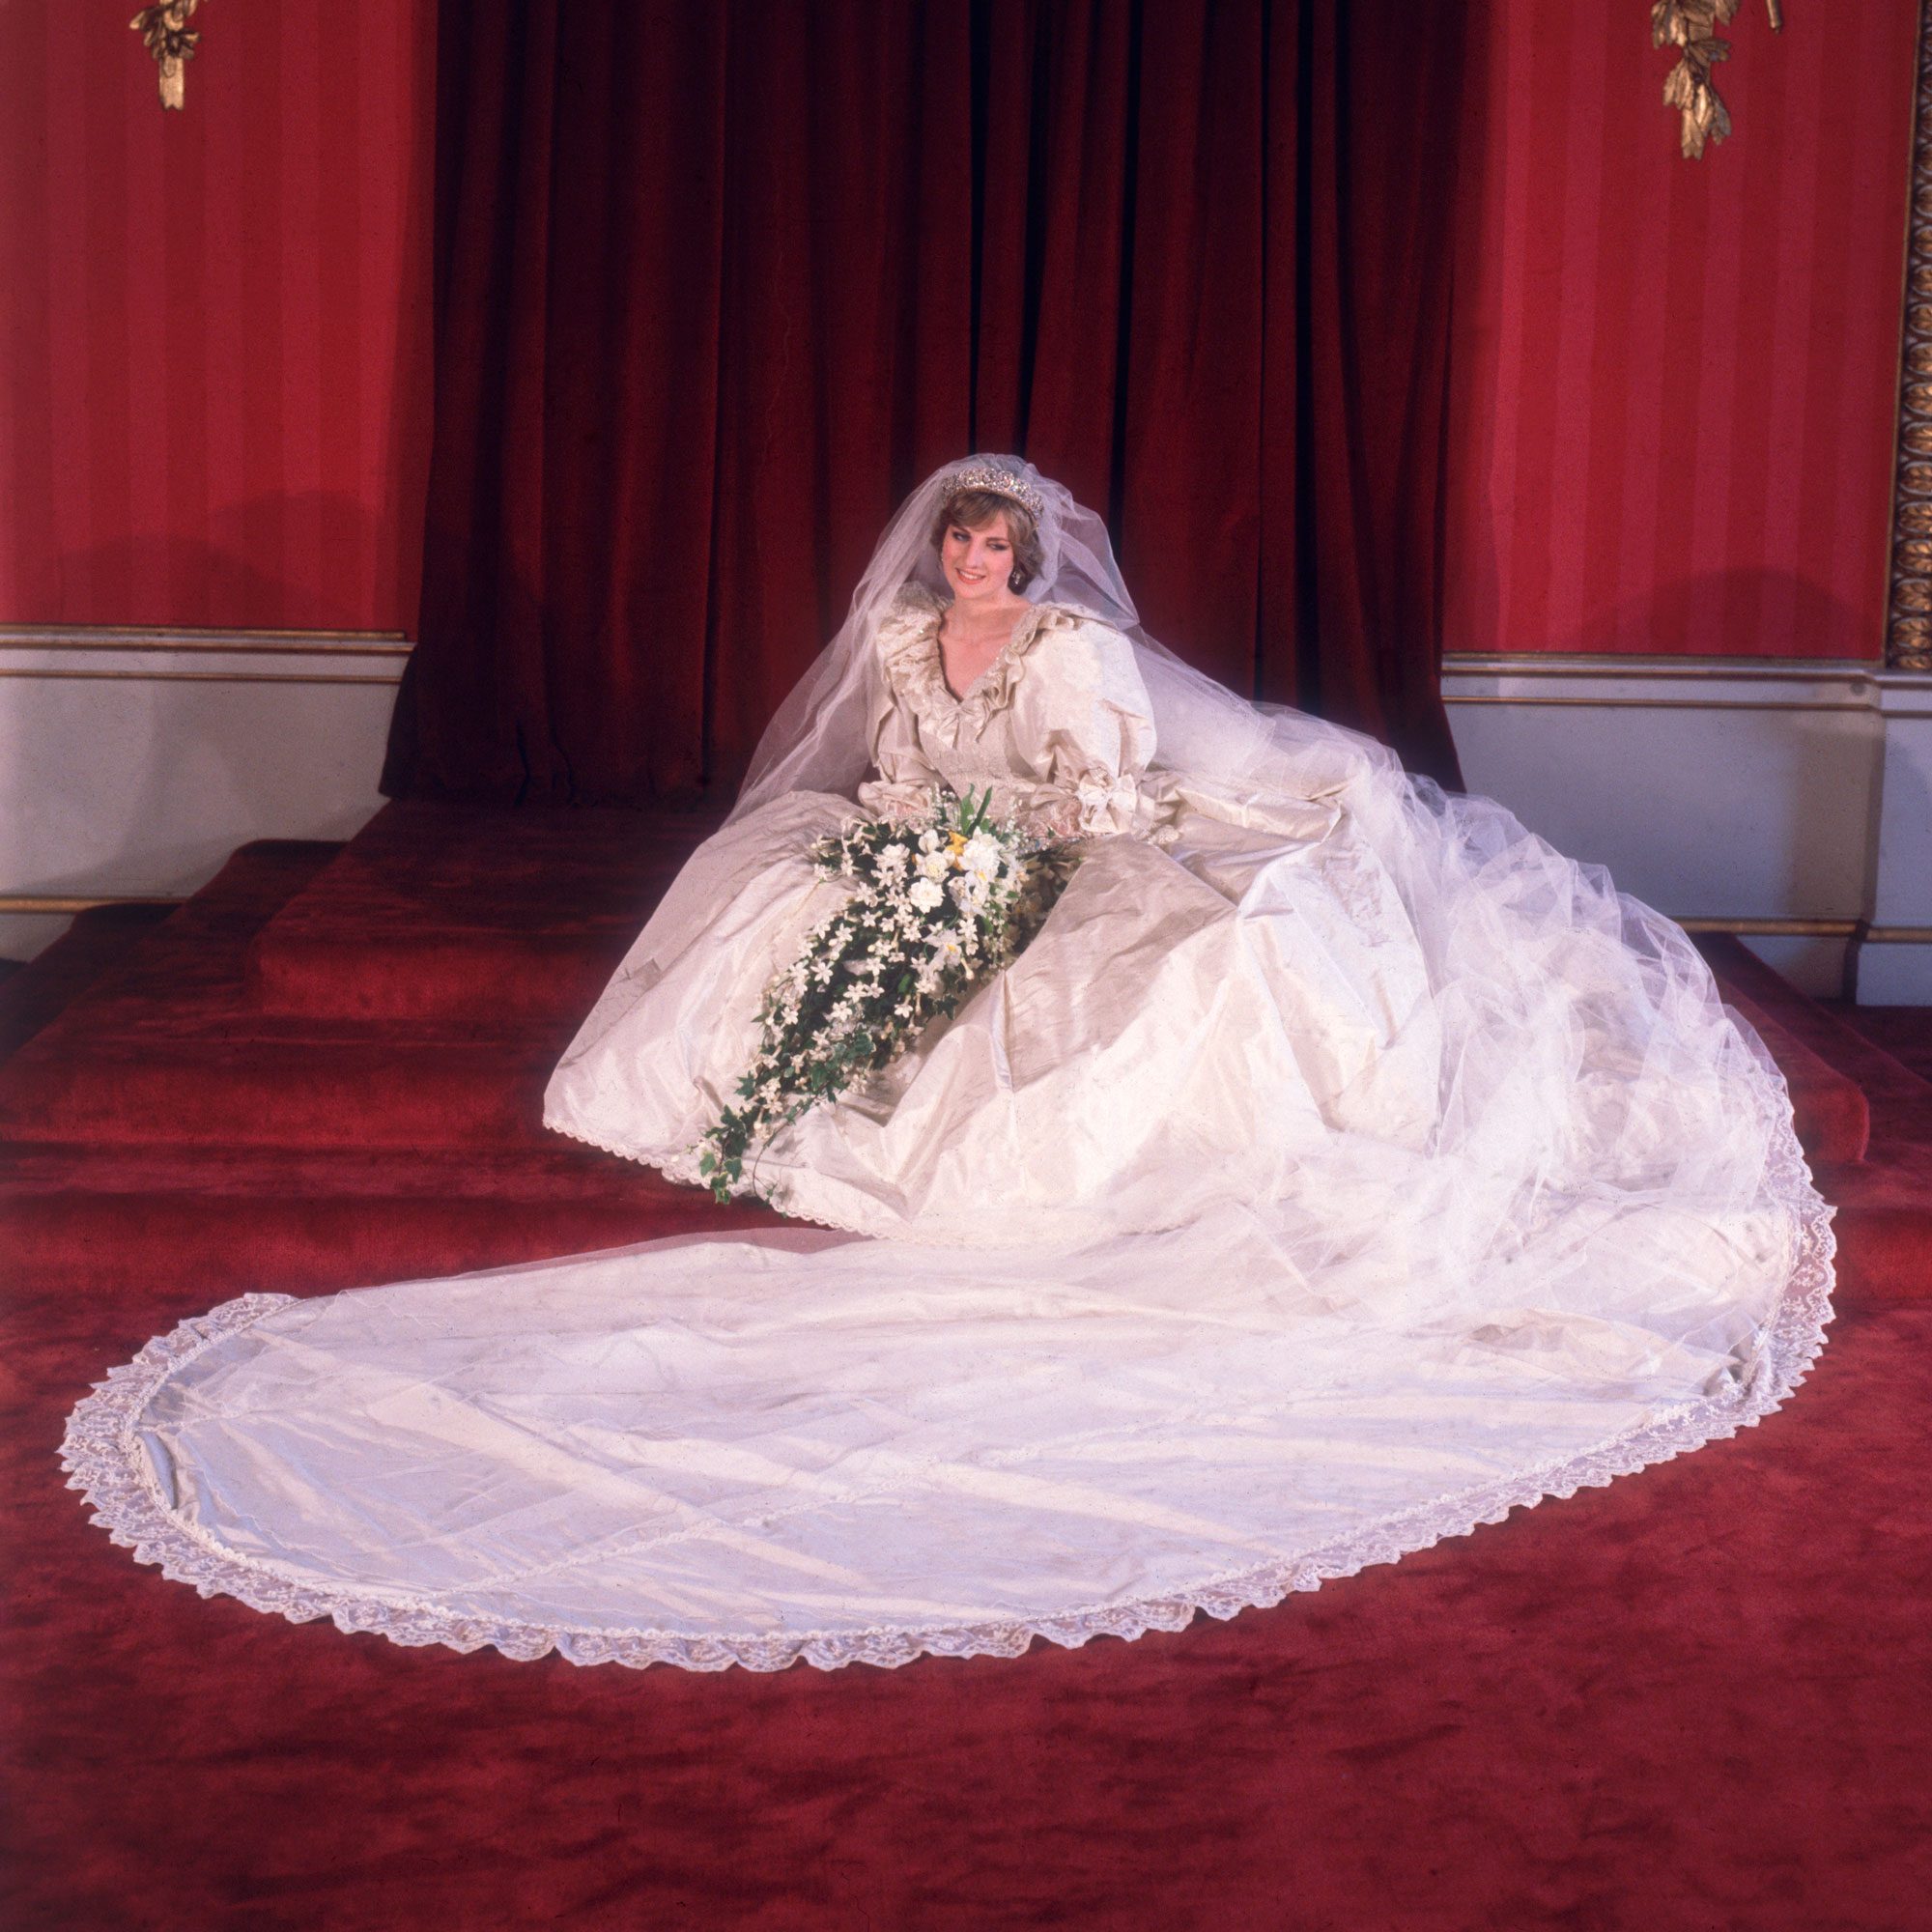 Princess Diana's Wedding Dress: All the Details